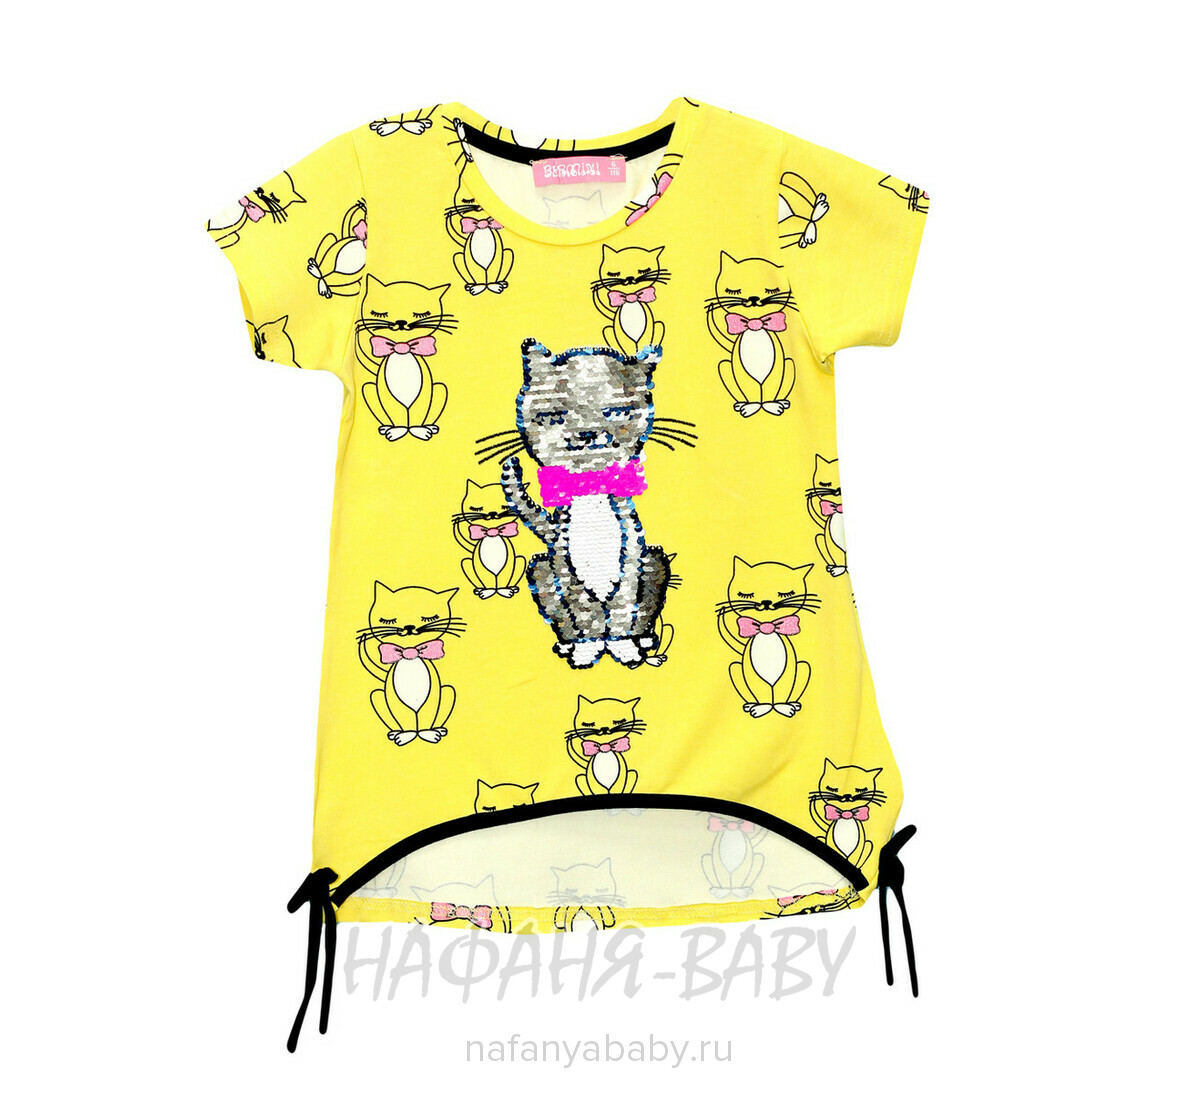 Детская футболка с паетками-перевертышами BERMINI, купить в интернет магазине Нафаня. арт: 6400.